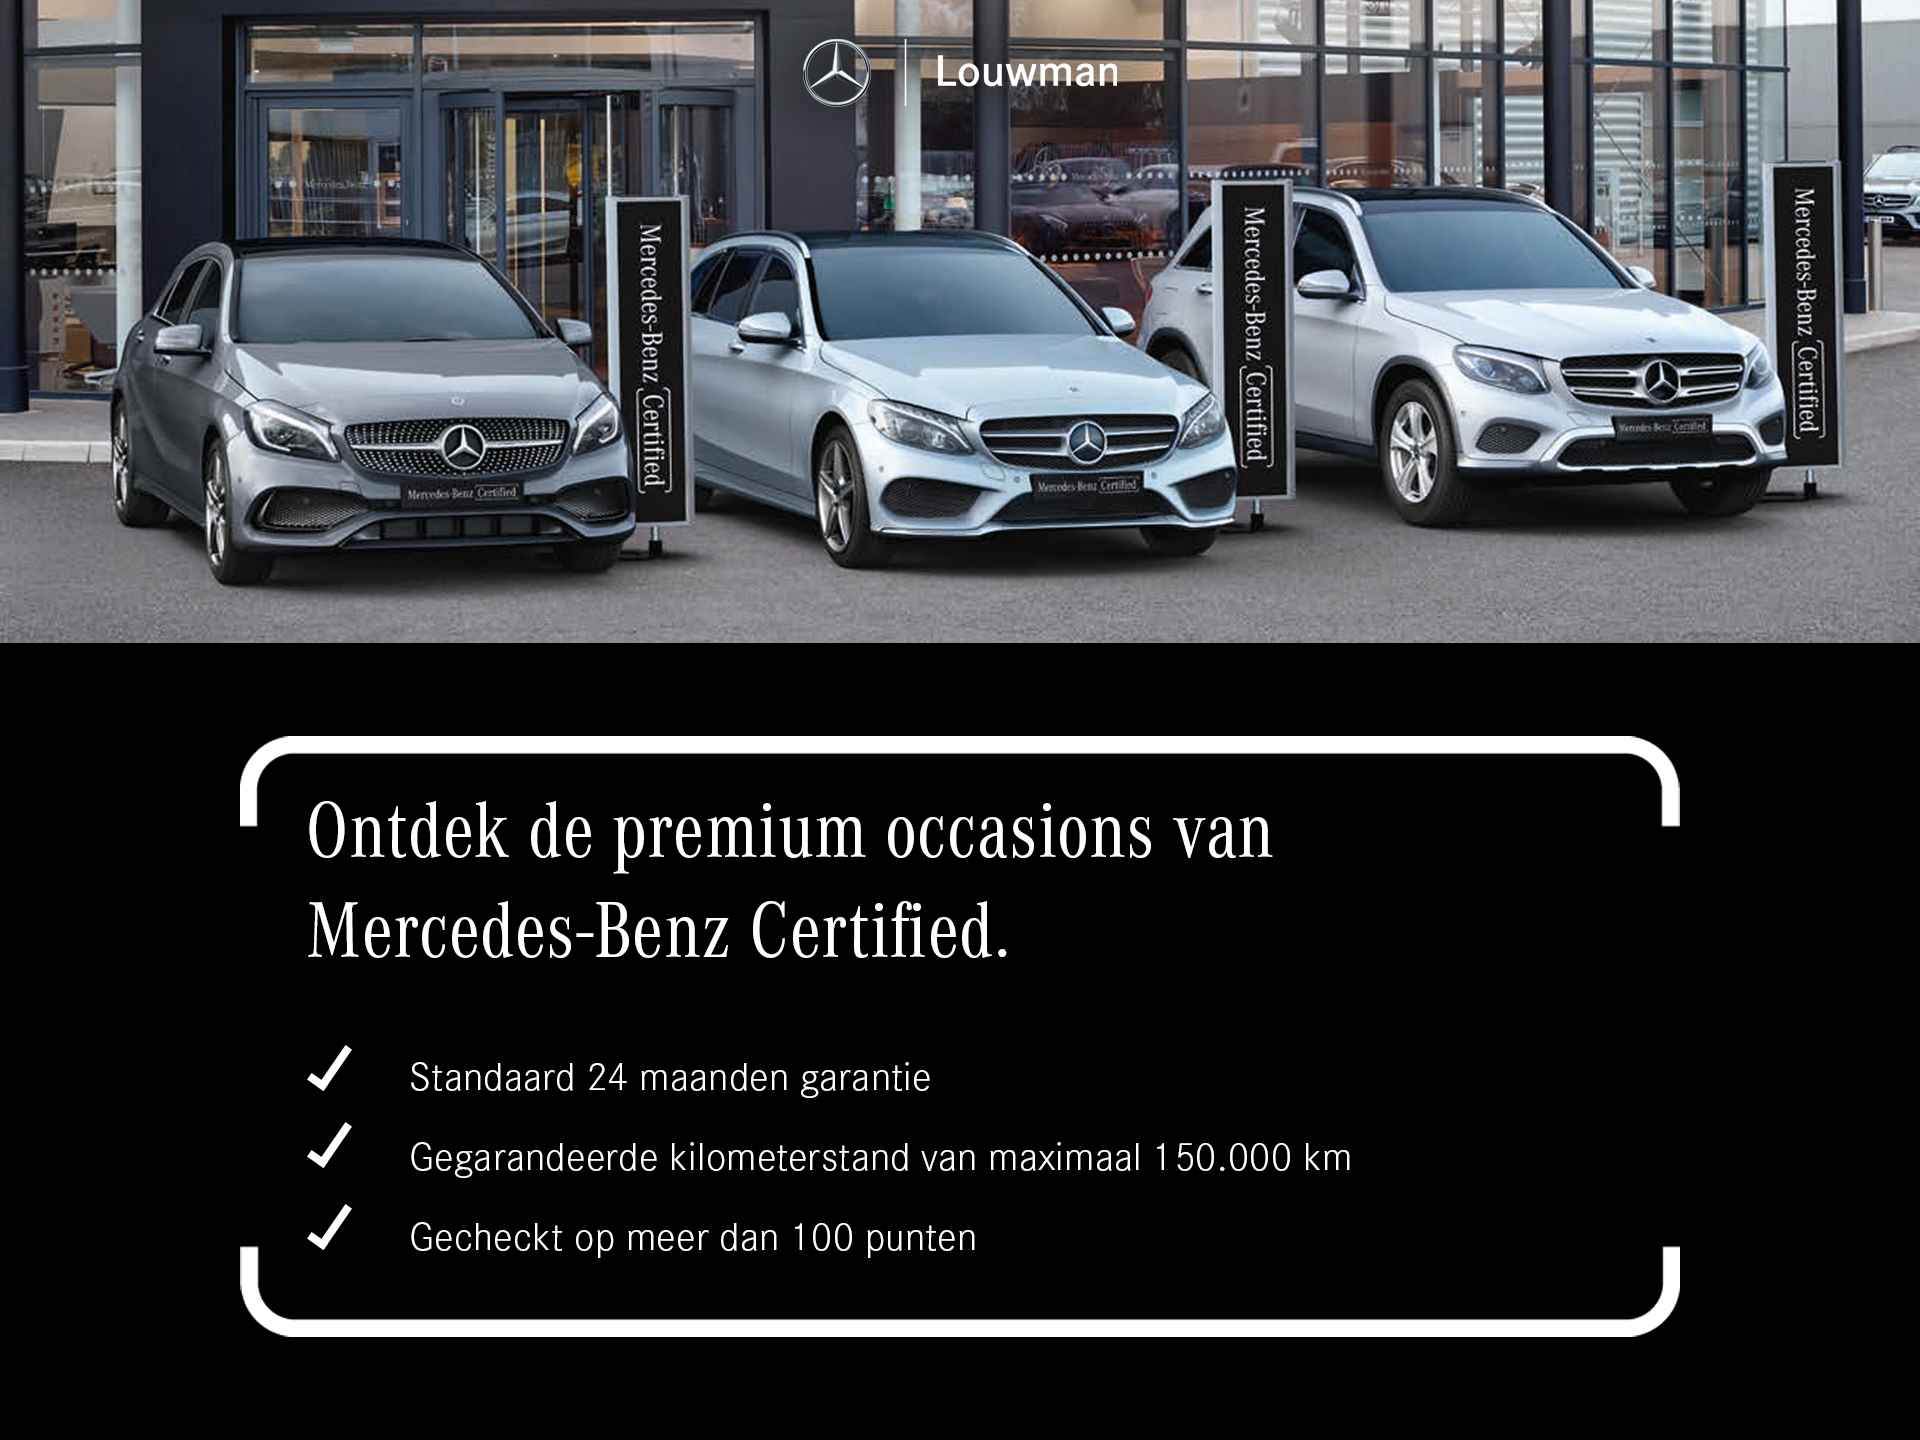 Mercedes-Benz B-Klasse 180 AMG Line | Premium Plus Pakket | GUARD 360 °  | Nightpakket | Smartphone integratiepakket | Inclusief 24 maanden MB Certified garantie voor Europa. - 38/39